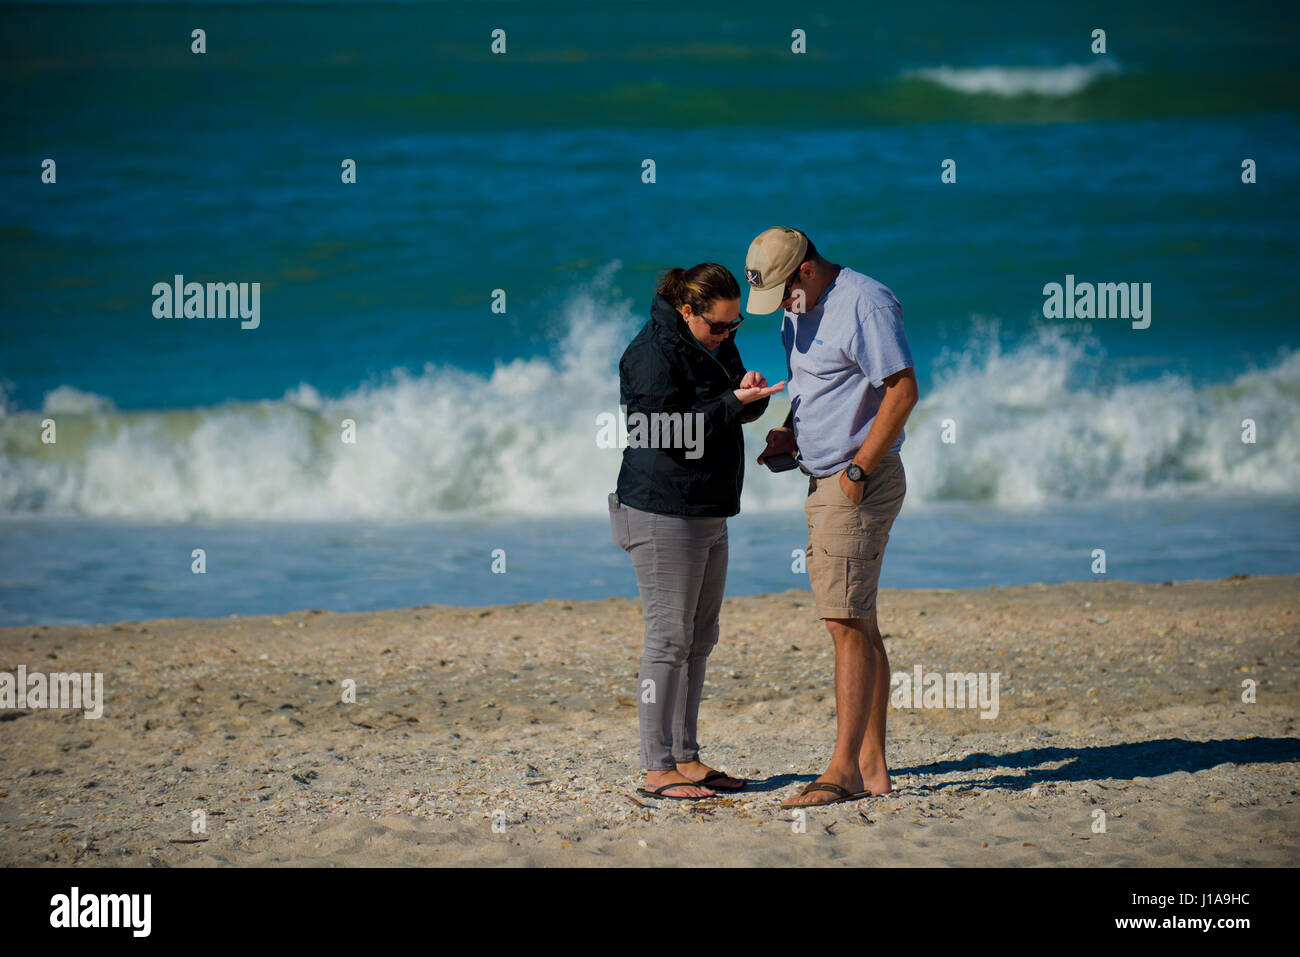 Menschen am Strand Muscheln suchen Stockfoto